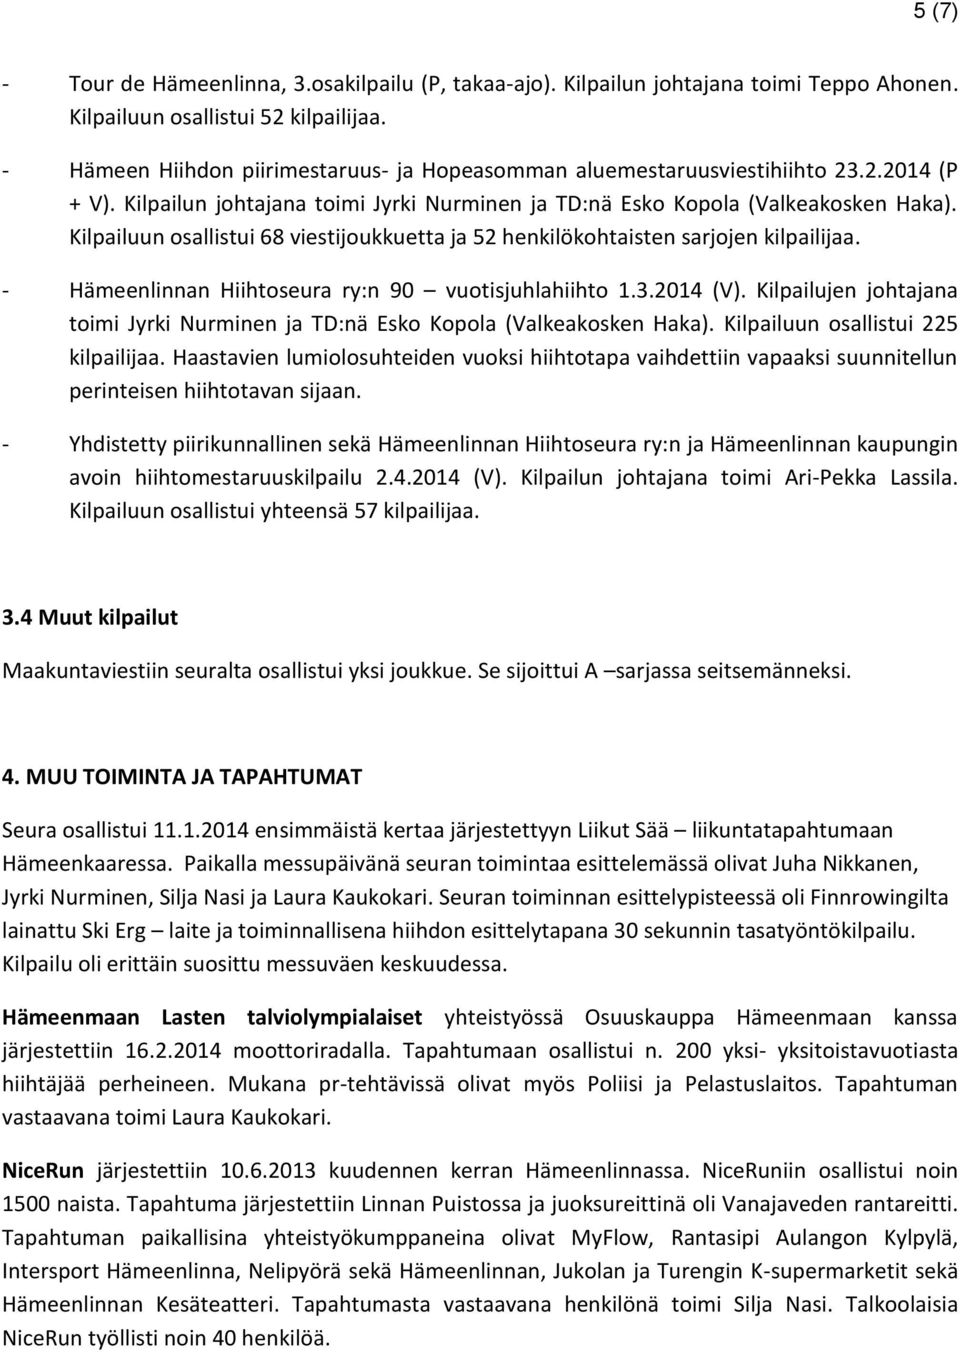 Kilpailuun osallistui 68 viestijoukkuetta ja 52 henkilökohtaisten sarjojen kilpailijaa. - Hämeenlinnan Hiihtoseura ry:n 90 vuotisjuhlahiihto 1.3.2014 (V).